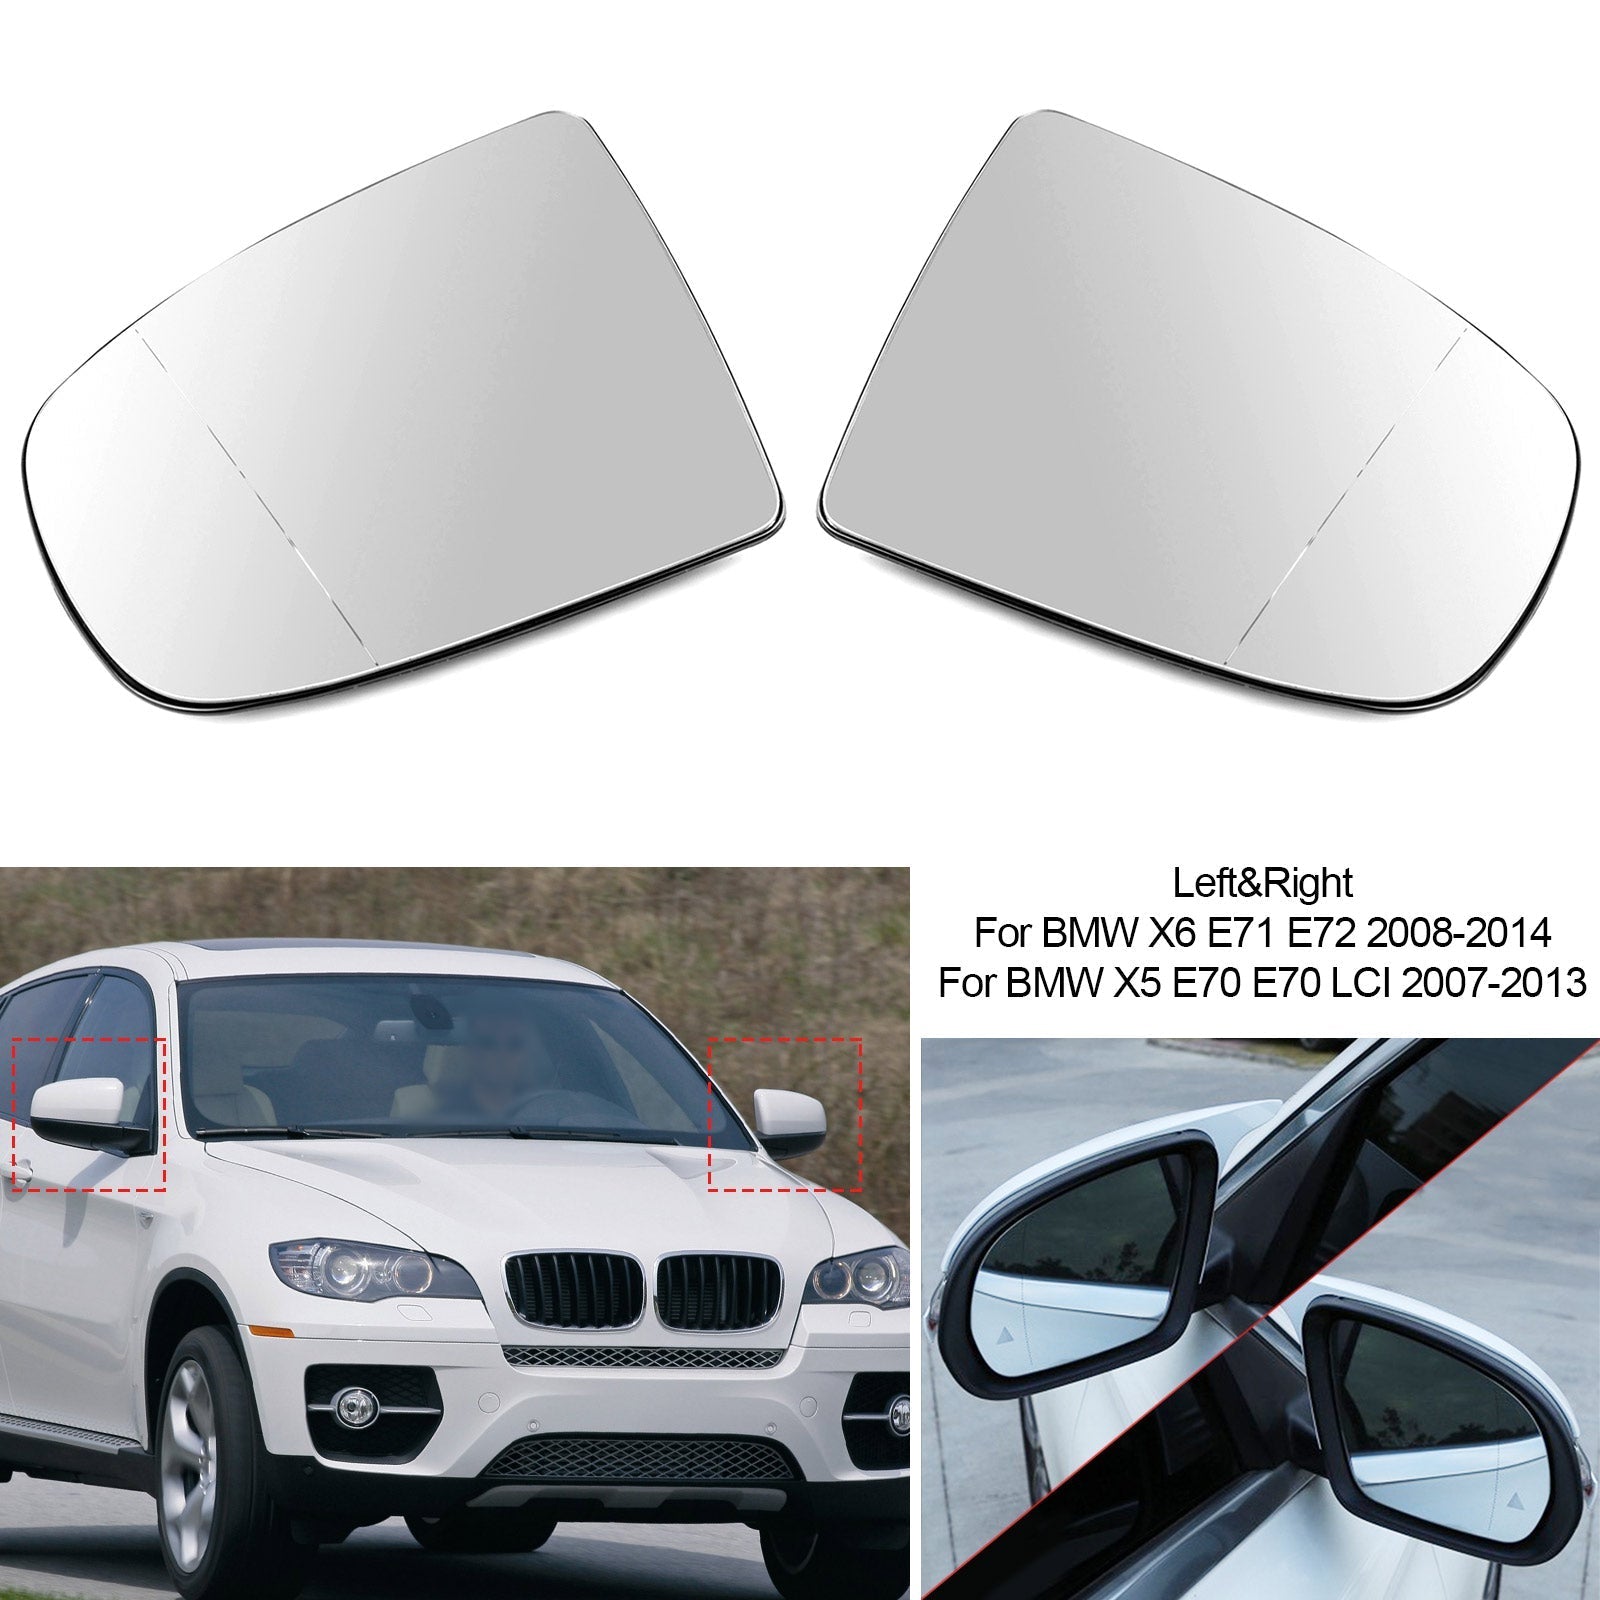 Paire de rétroviseurs latéraux chauffants en verre blanc pour BMW X5 X6 E70 E71 E72 2008-2014 générique